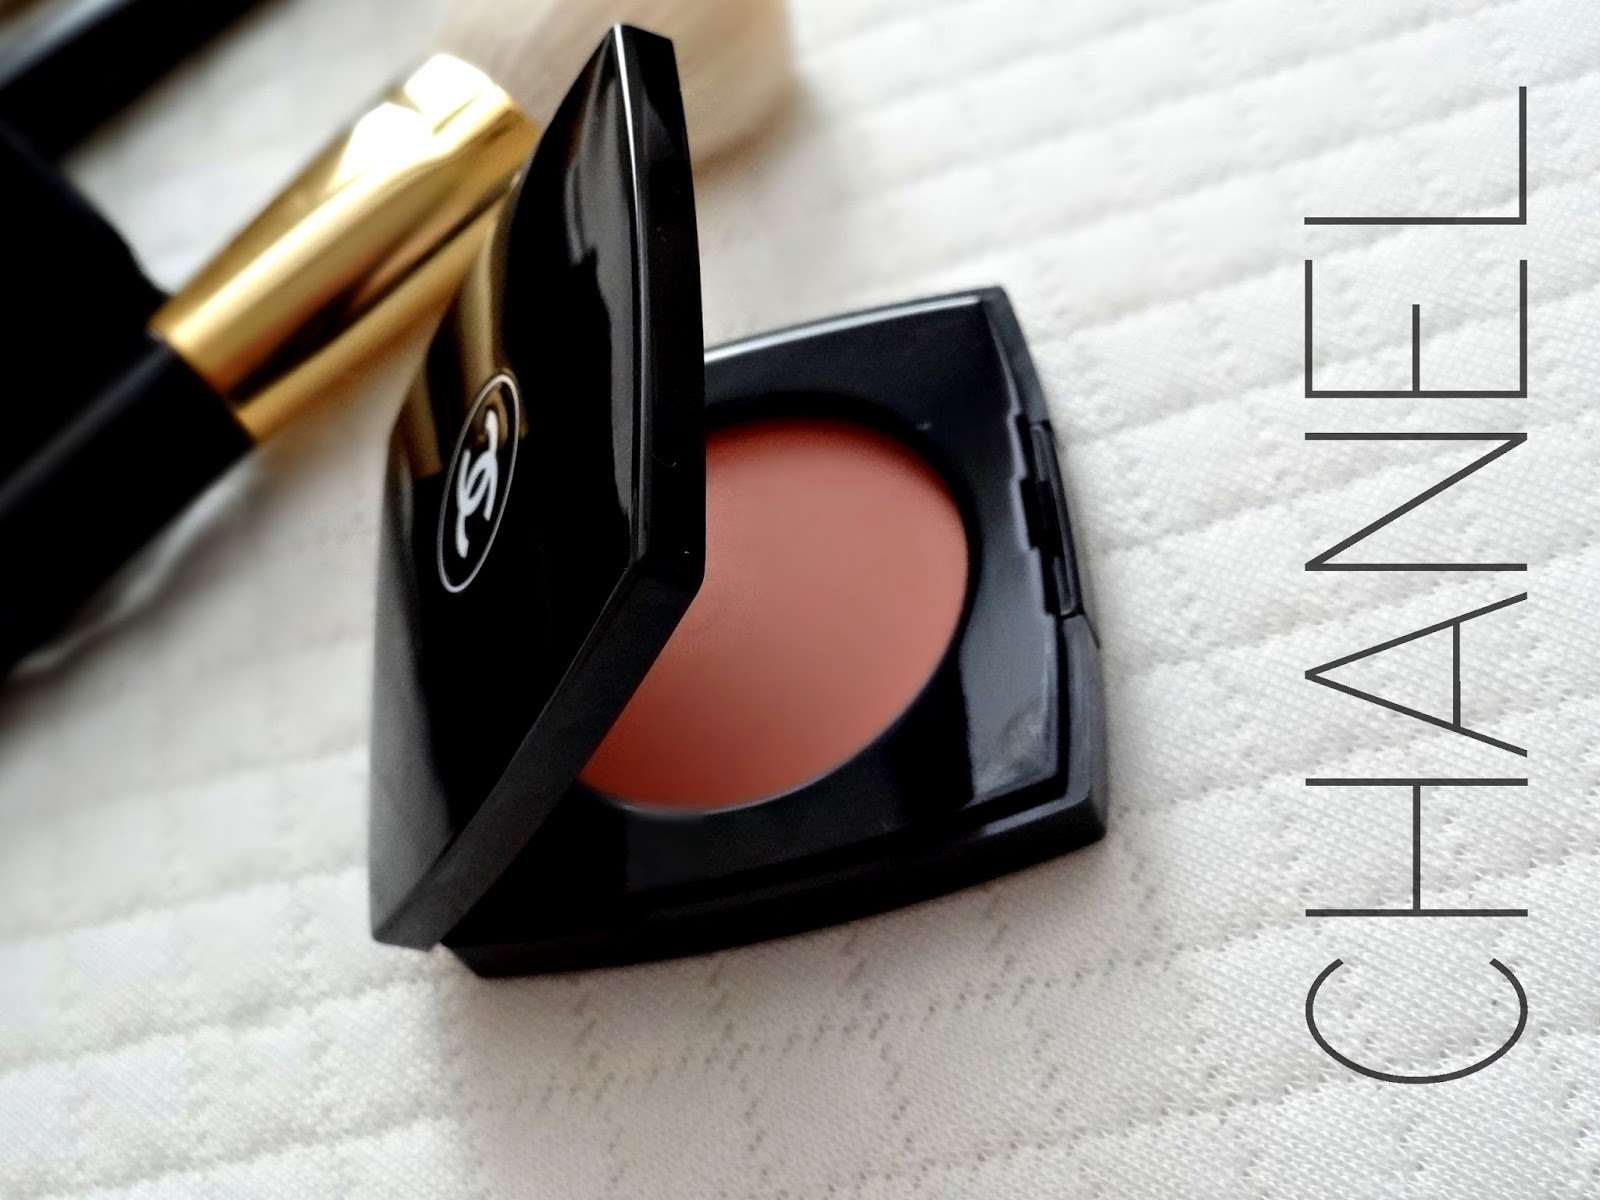 Makeup, Beauty and More: Le Blush Creme de Chanel in Destiny